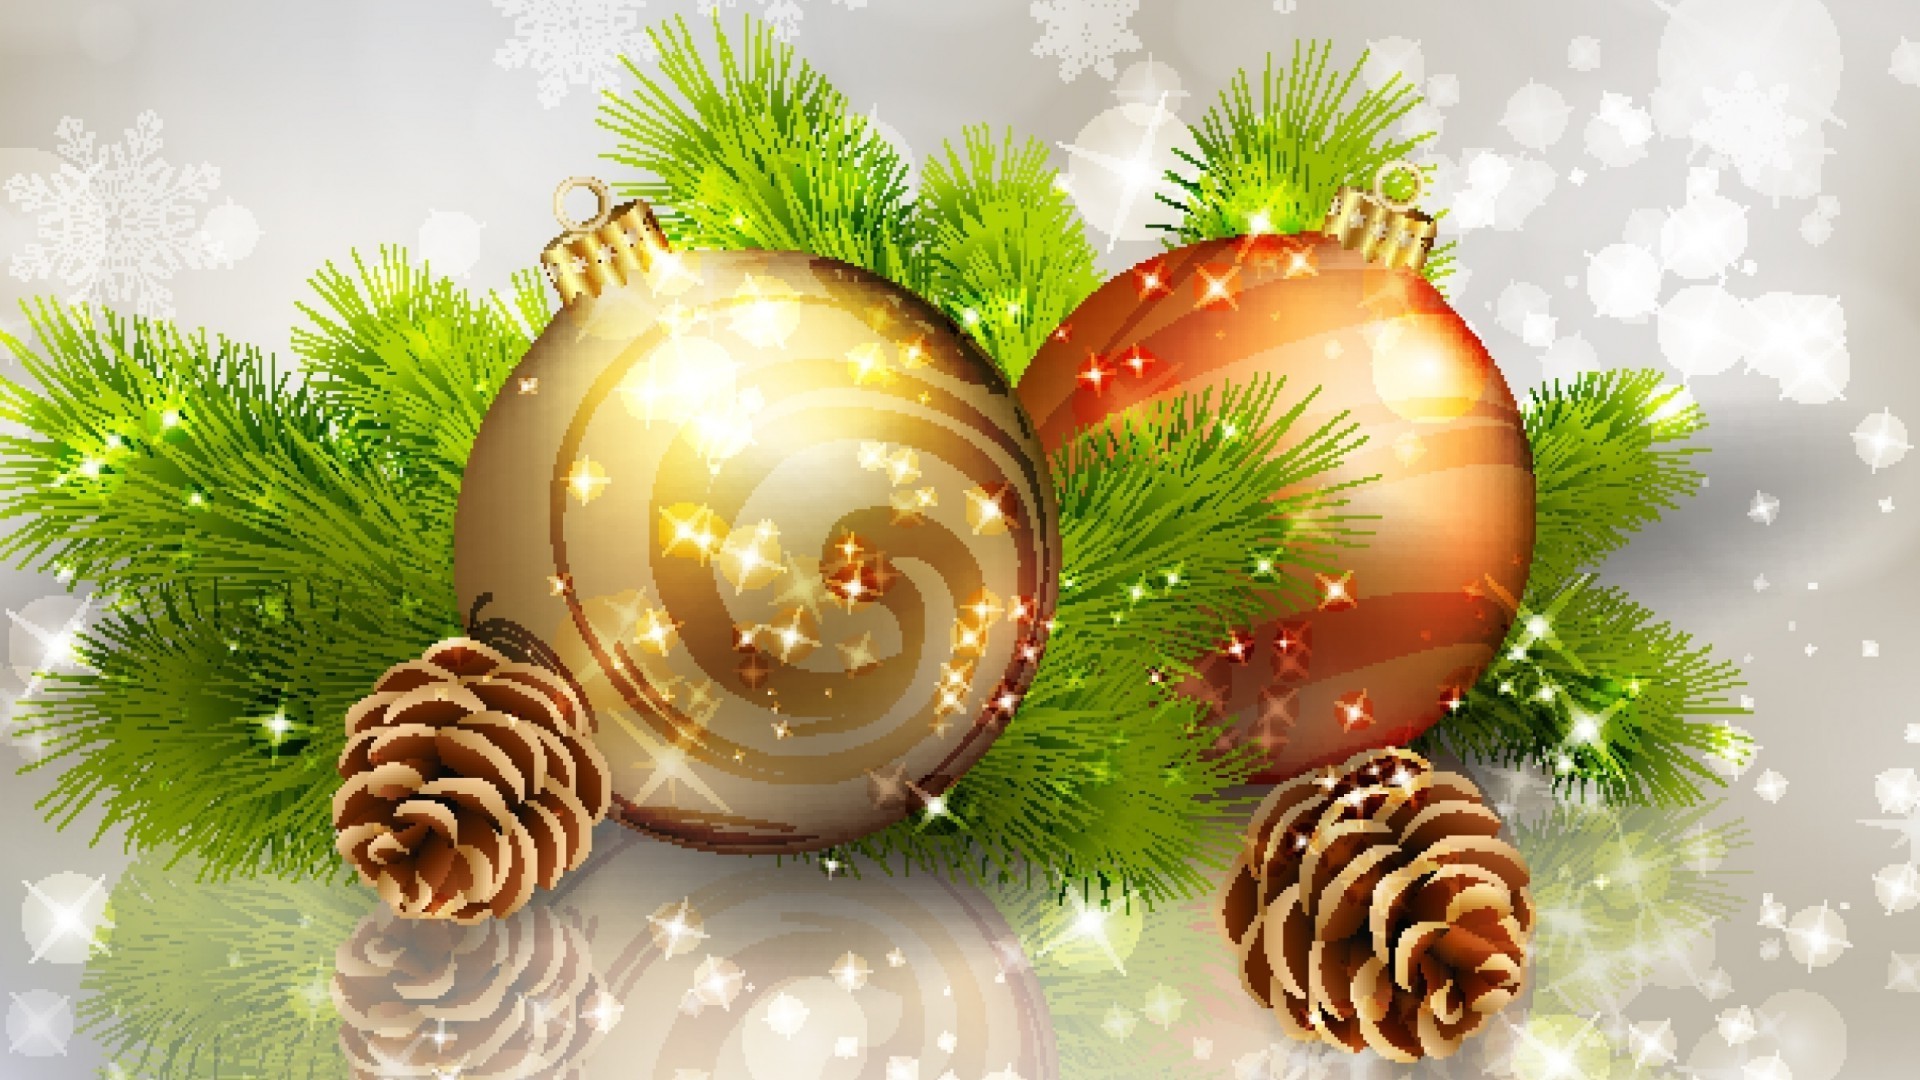 новый год рождество украшения зима праздник мяч сосна светит отпуск пихта традиционные сфера мерри дизайн интерьера золото нить дерево витиеватый блестят сезон